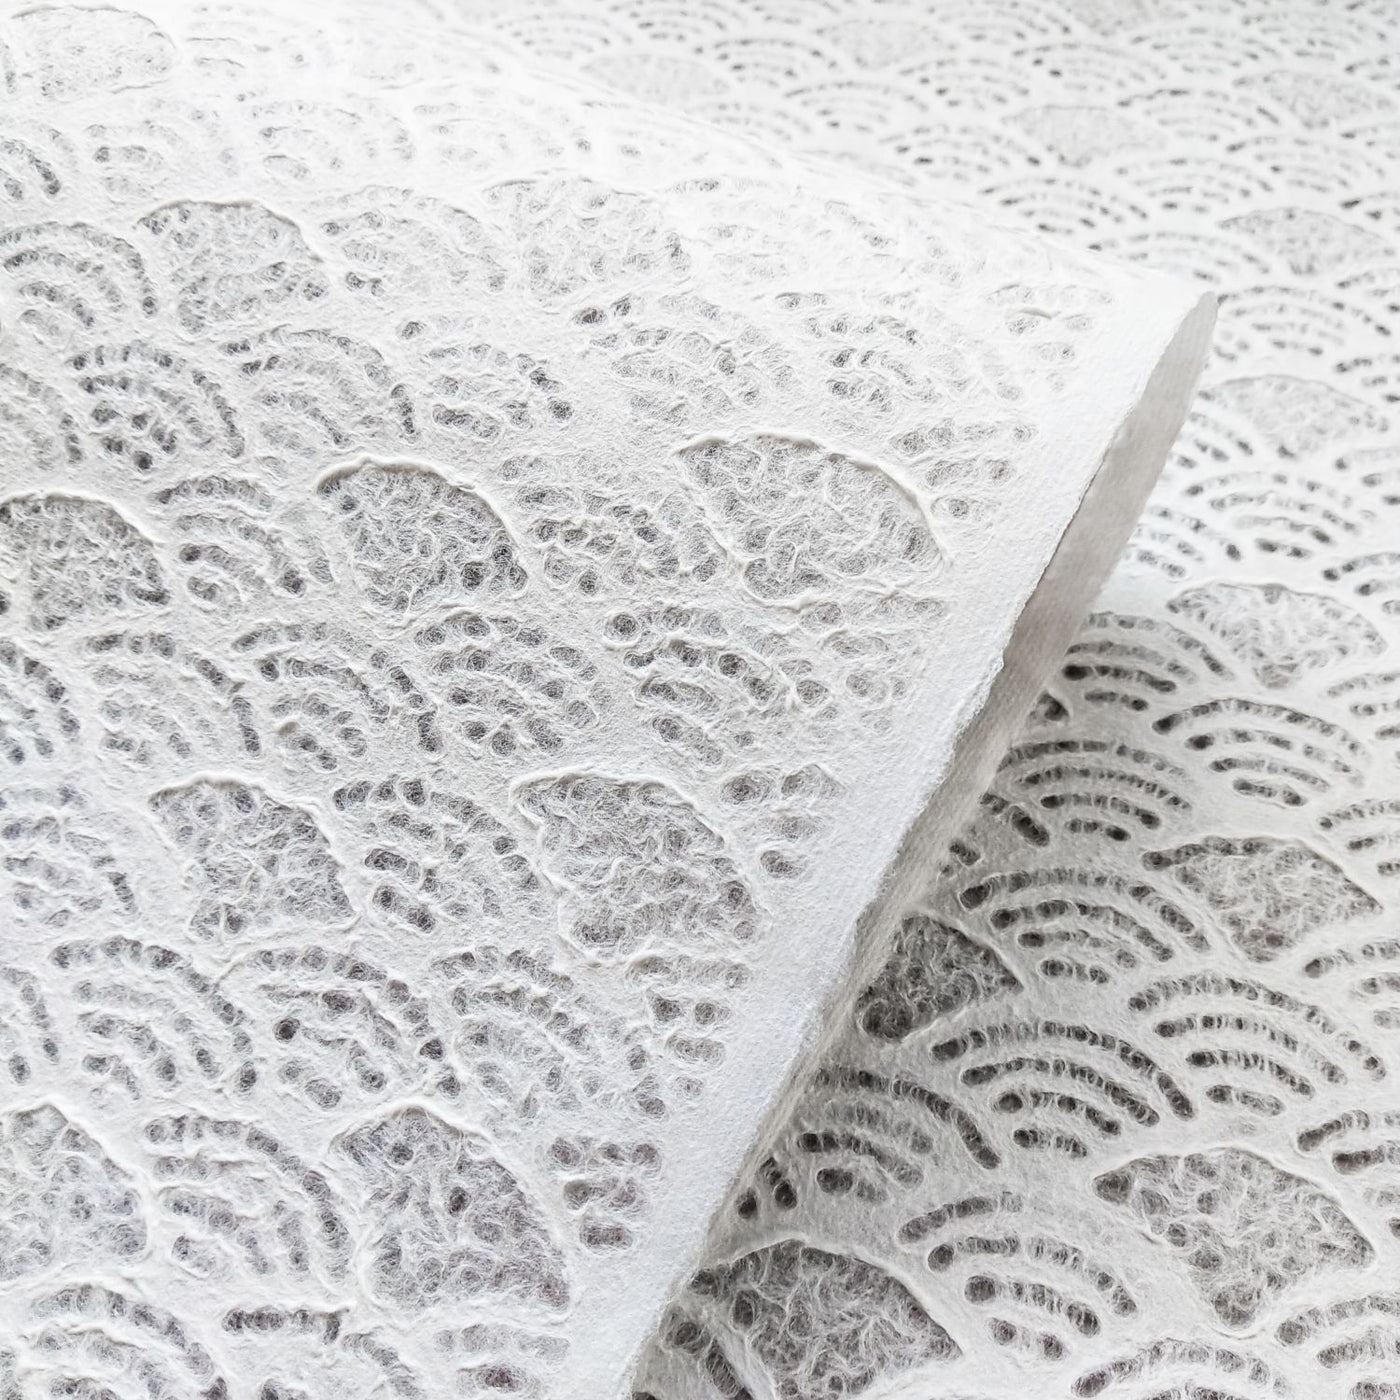 Handmade Lace Kozo Paper (Fan)